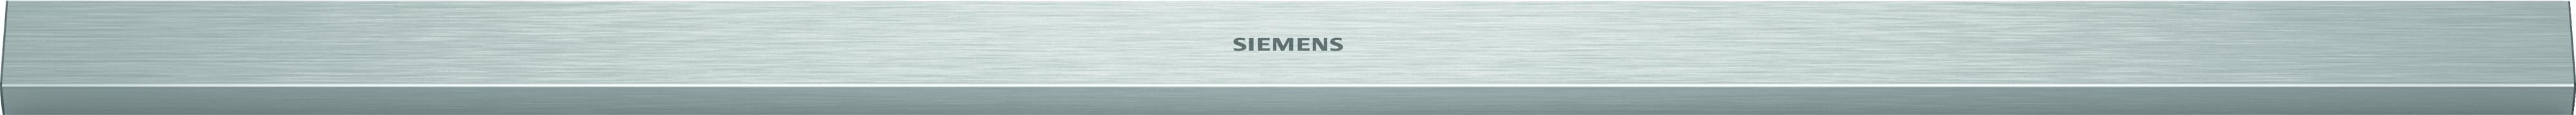 Siemens LZ49551 90 cm greeplijst rvs, met logo(LI97... ) online kopen